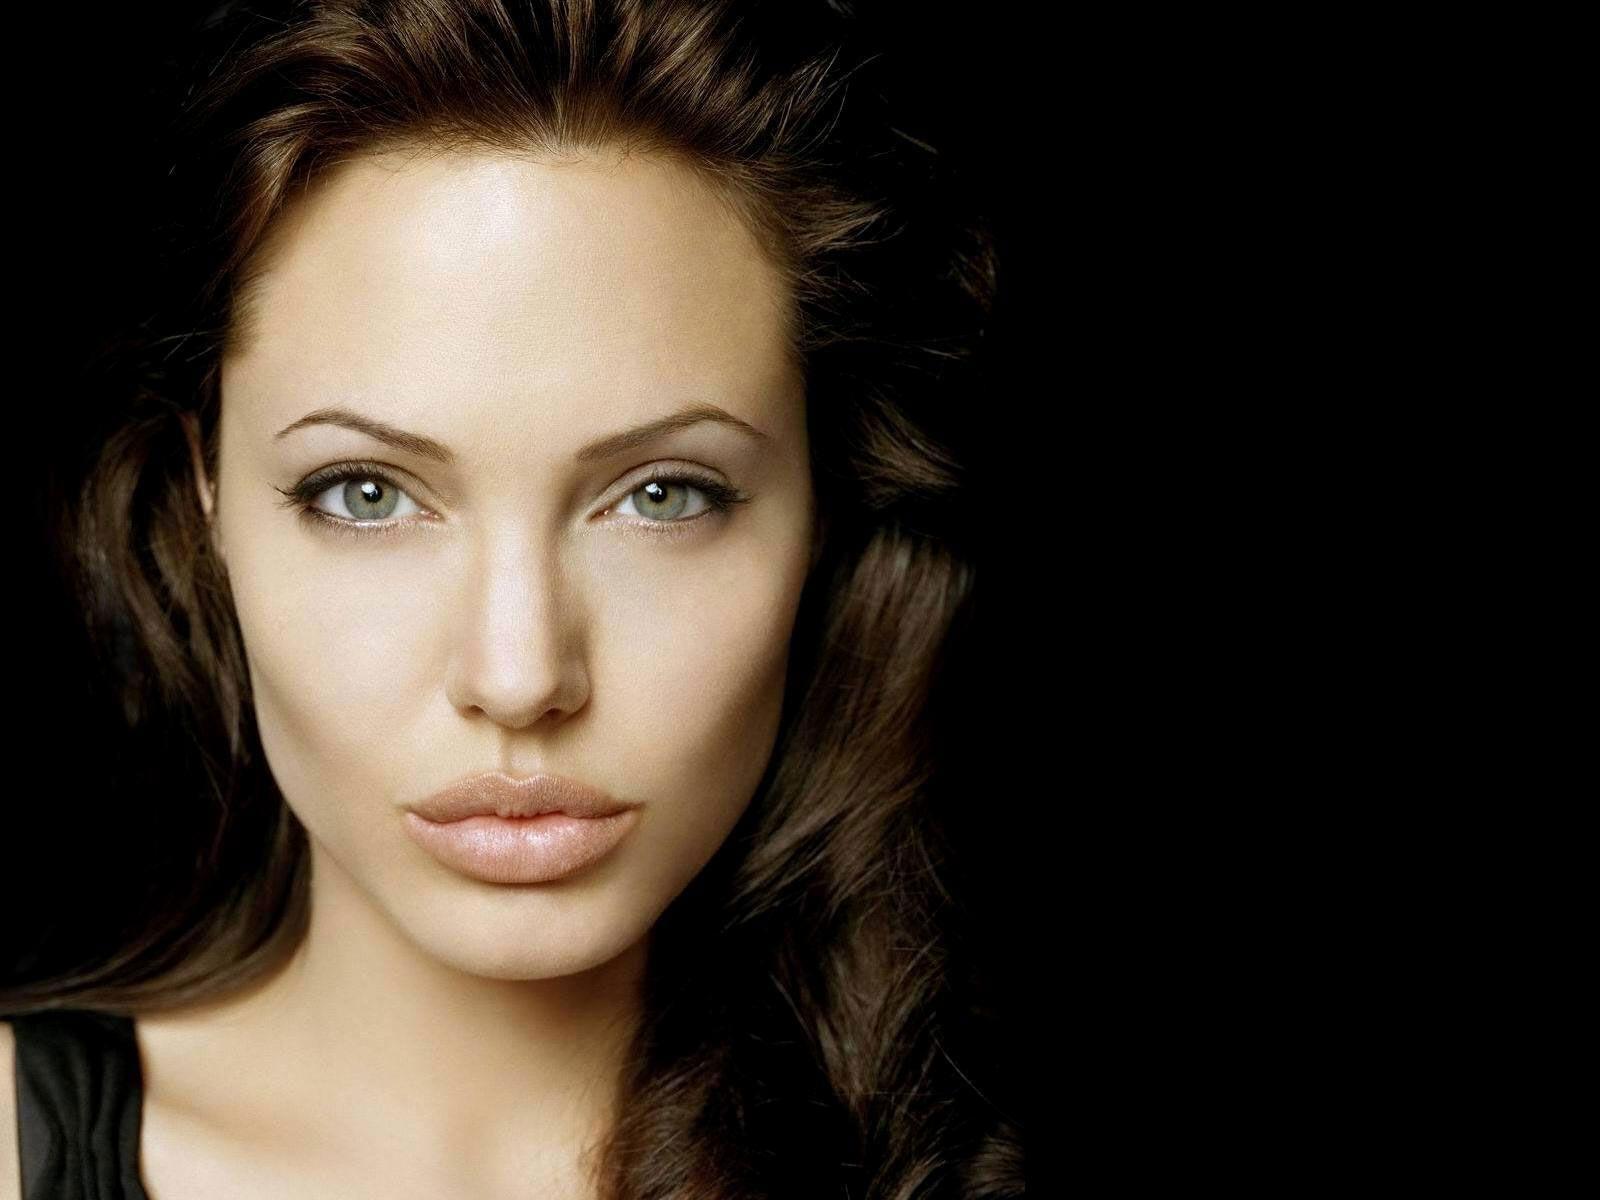 Бесплатный Сайт Знакомств Джоли